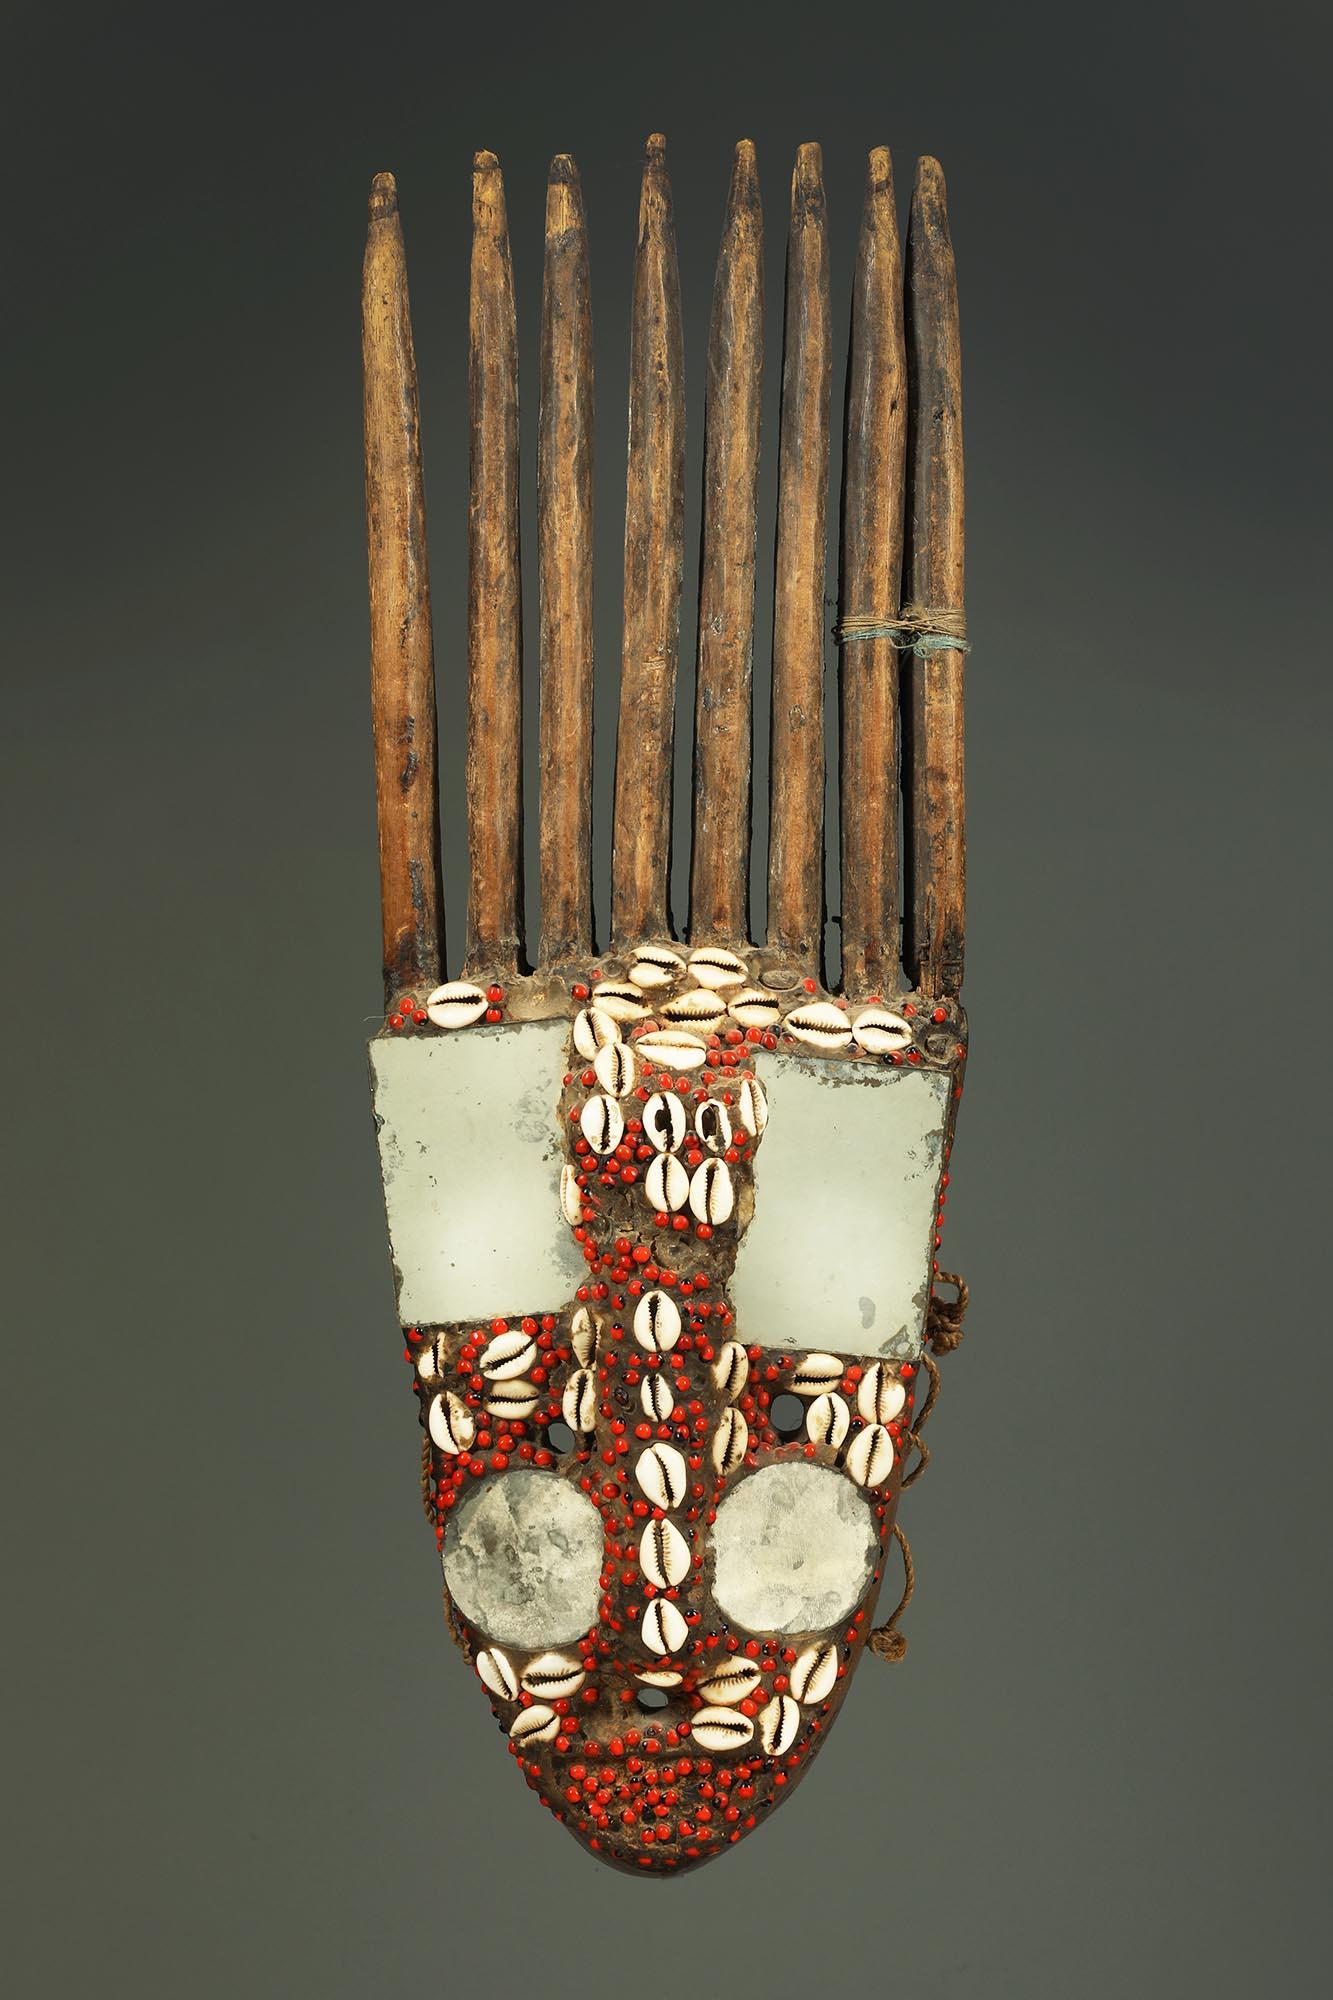 Masque d'antilope en bois sculpté, avec de nombreuses cornes, des miroirs en verre appliqués, des cauris et des graines.  Ancienne réparation native sur une des cornes.  

Il est en bon état d'usure et d'érosion dues à un usage traditionnel,